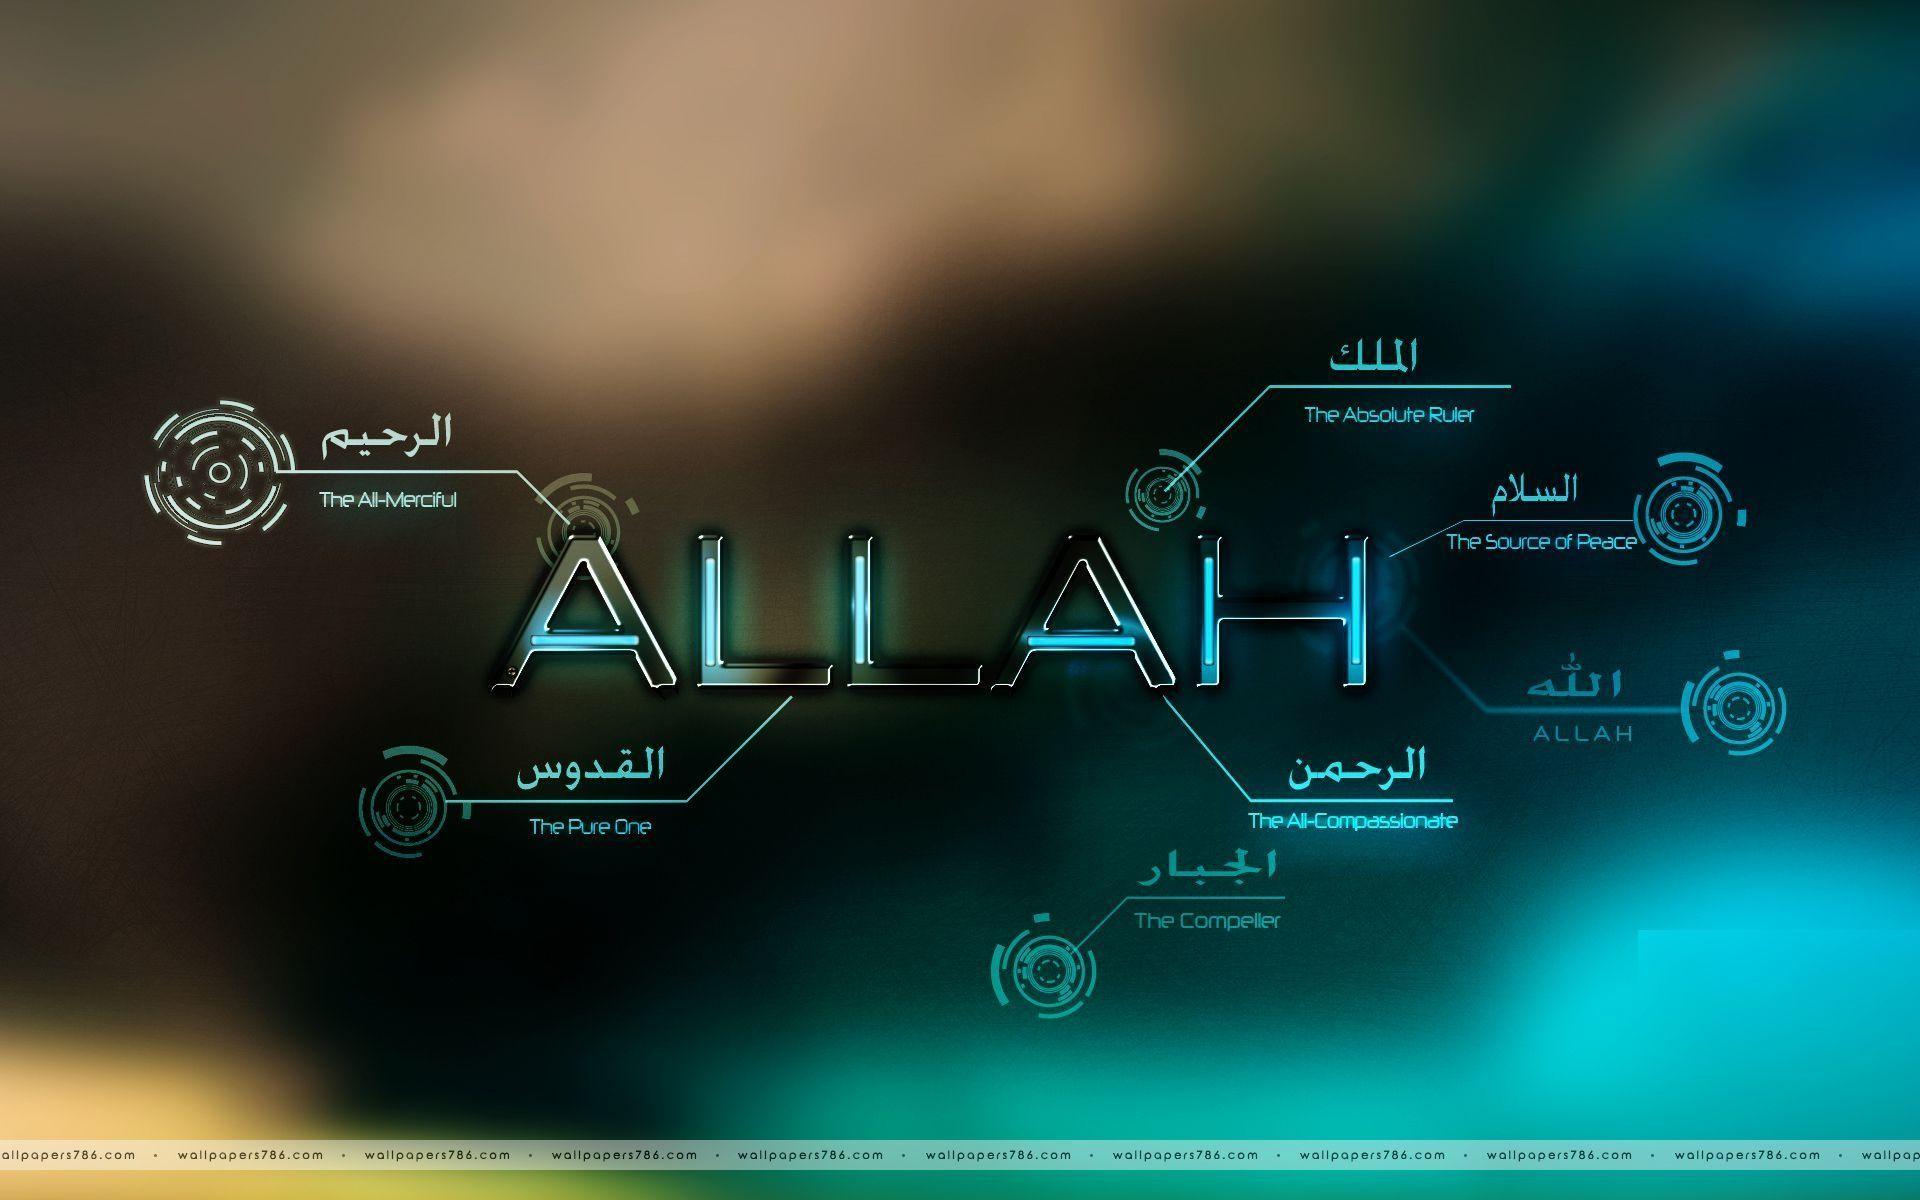 Allah Desktop Wallpapers - Wallpaper Cave